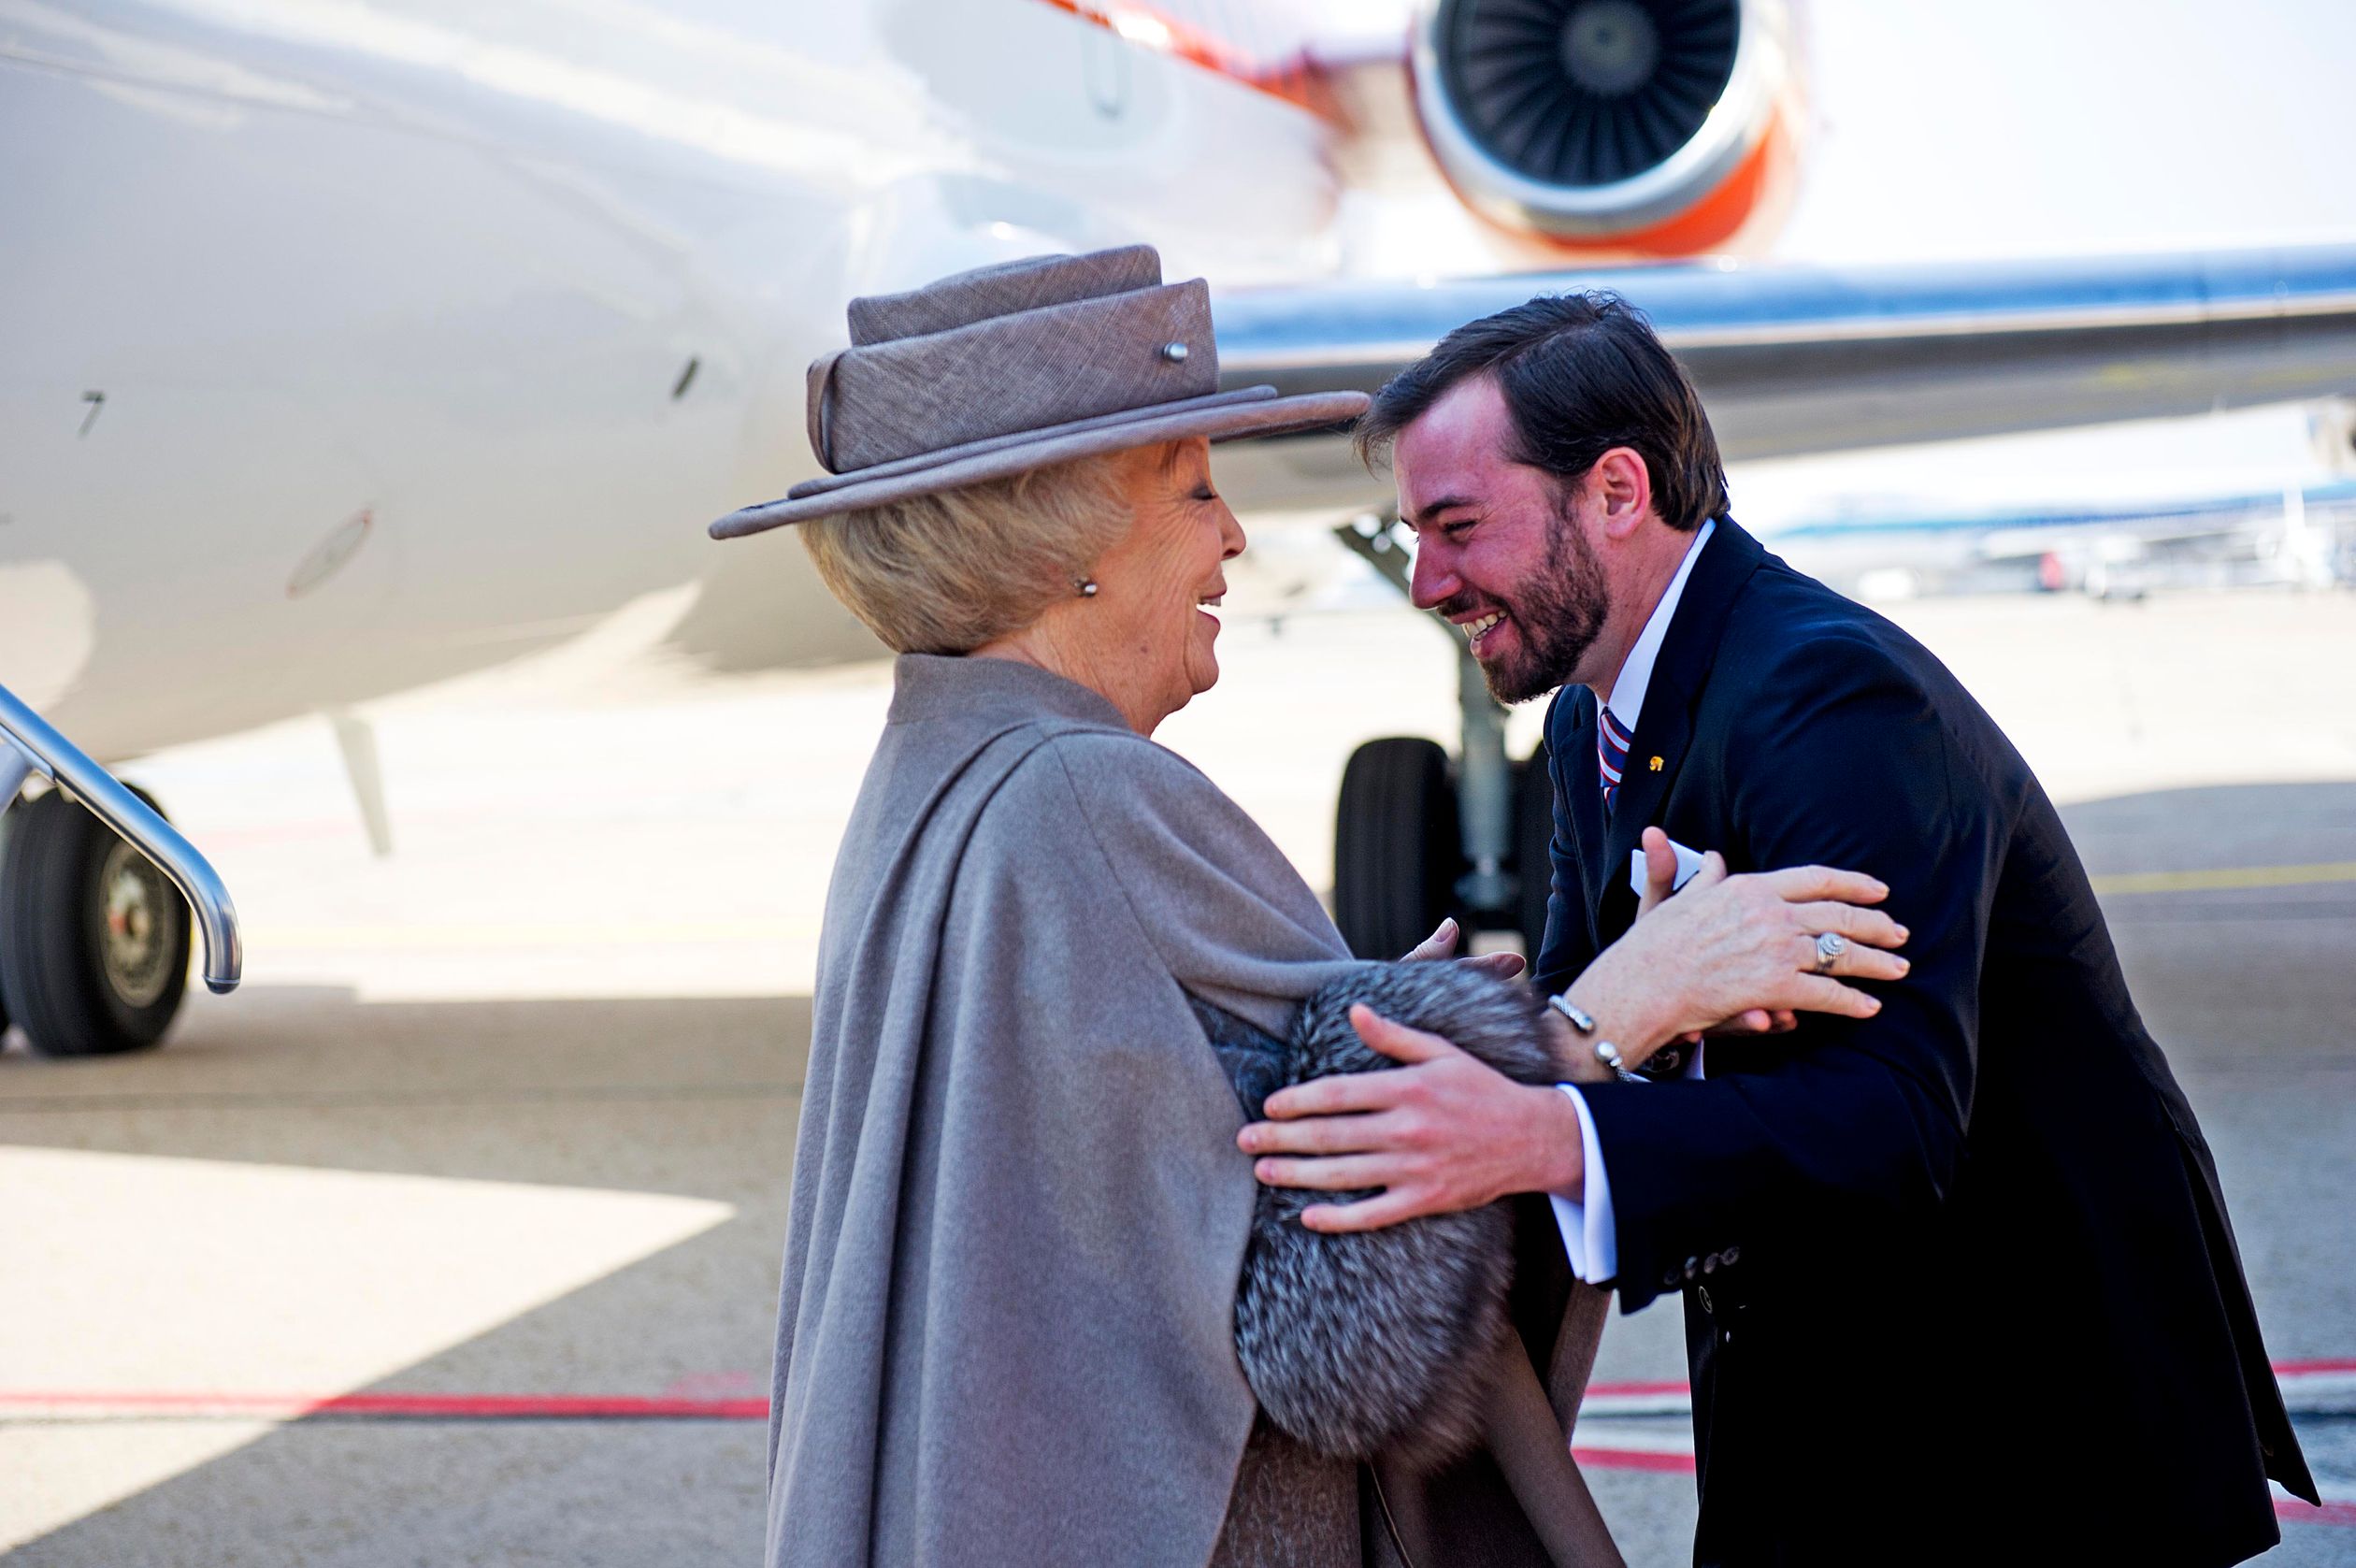 Koningin Beatrix brengt in maart 2012 een driedaags staatsbezoek aan Luxemburg en wordt hartelijk